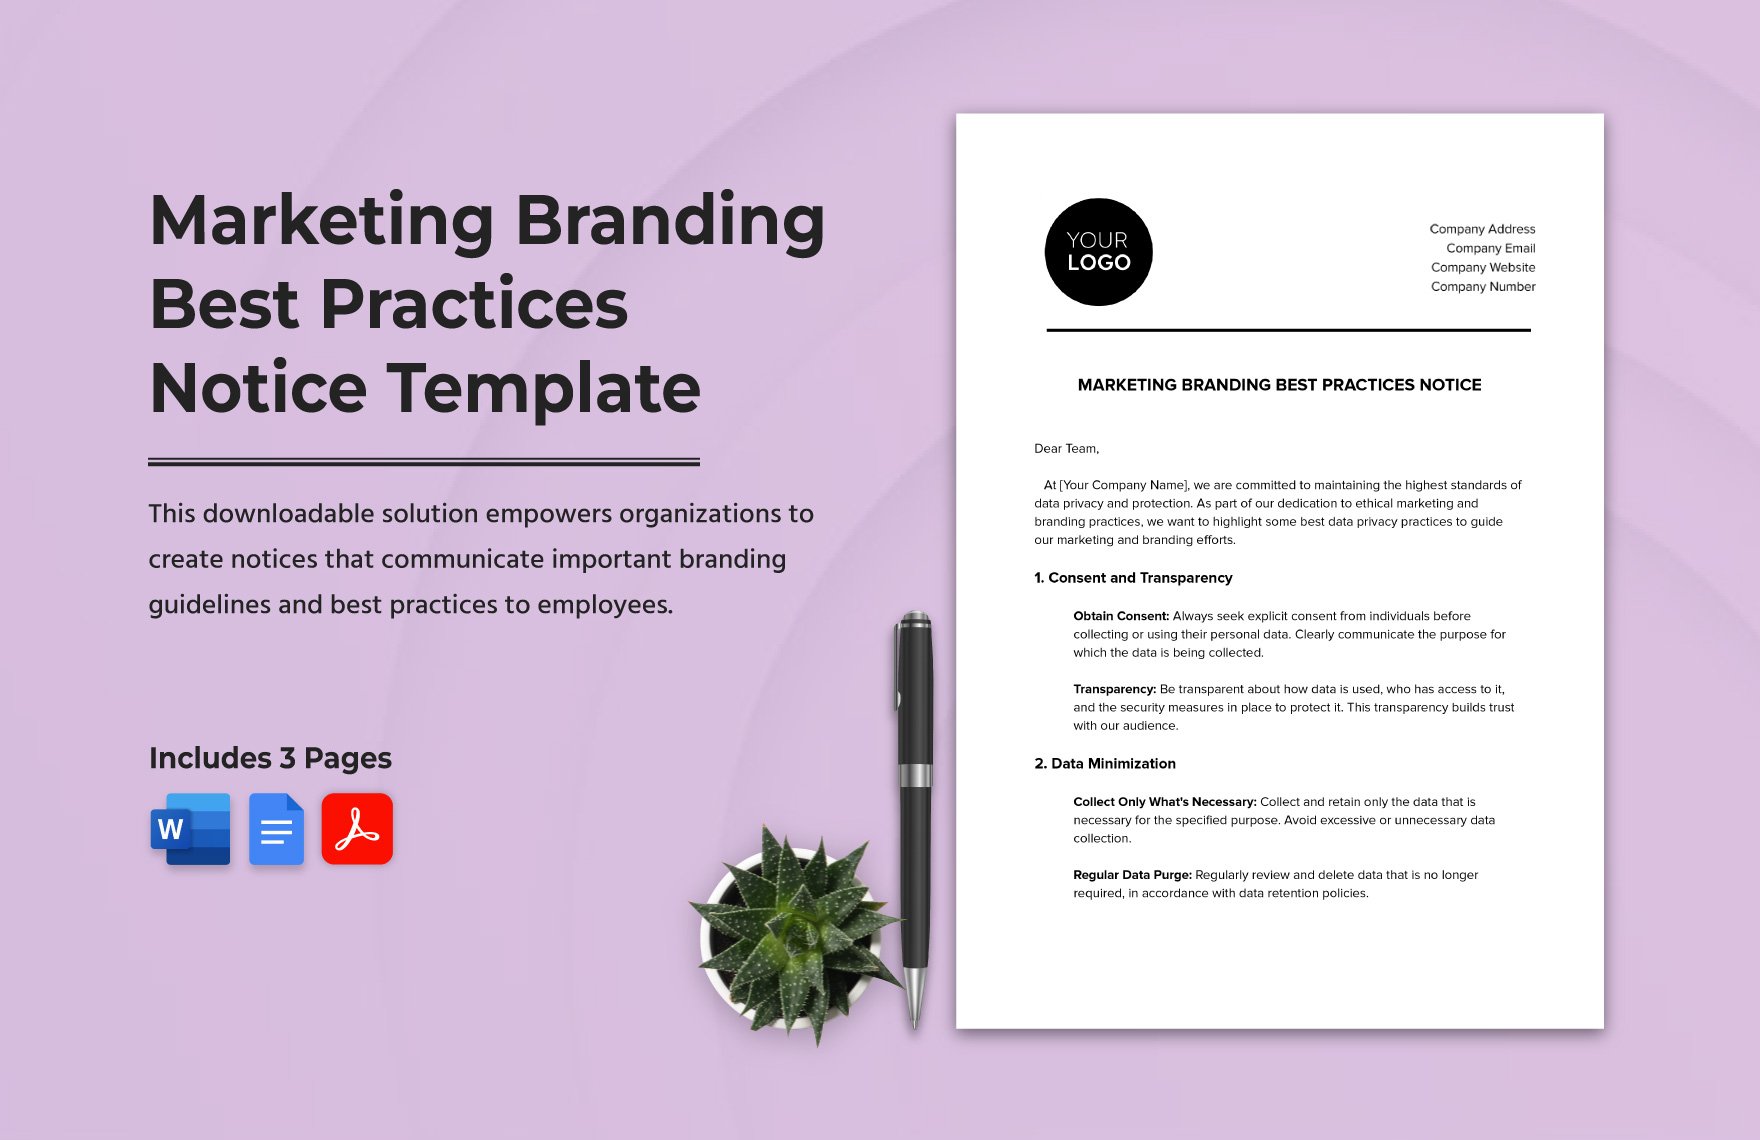  Marketing Branding Best Practices Notice Template